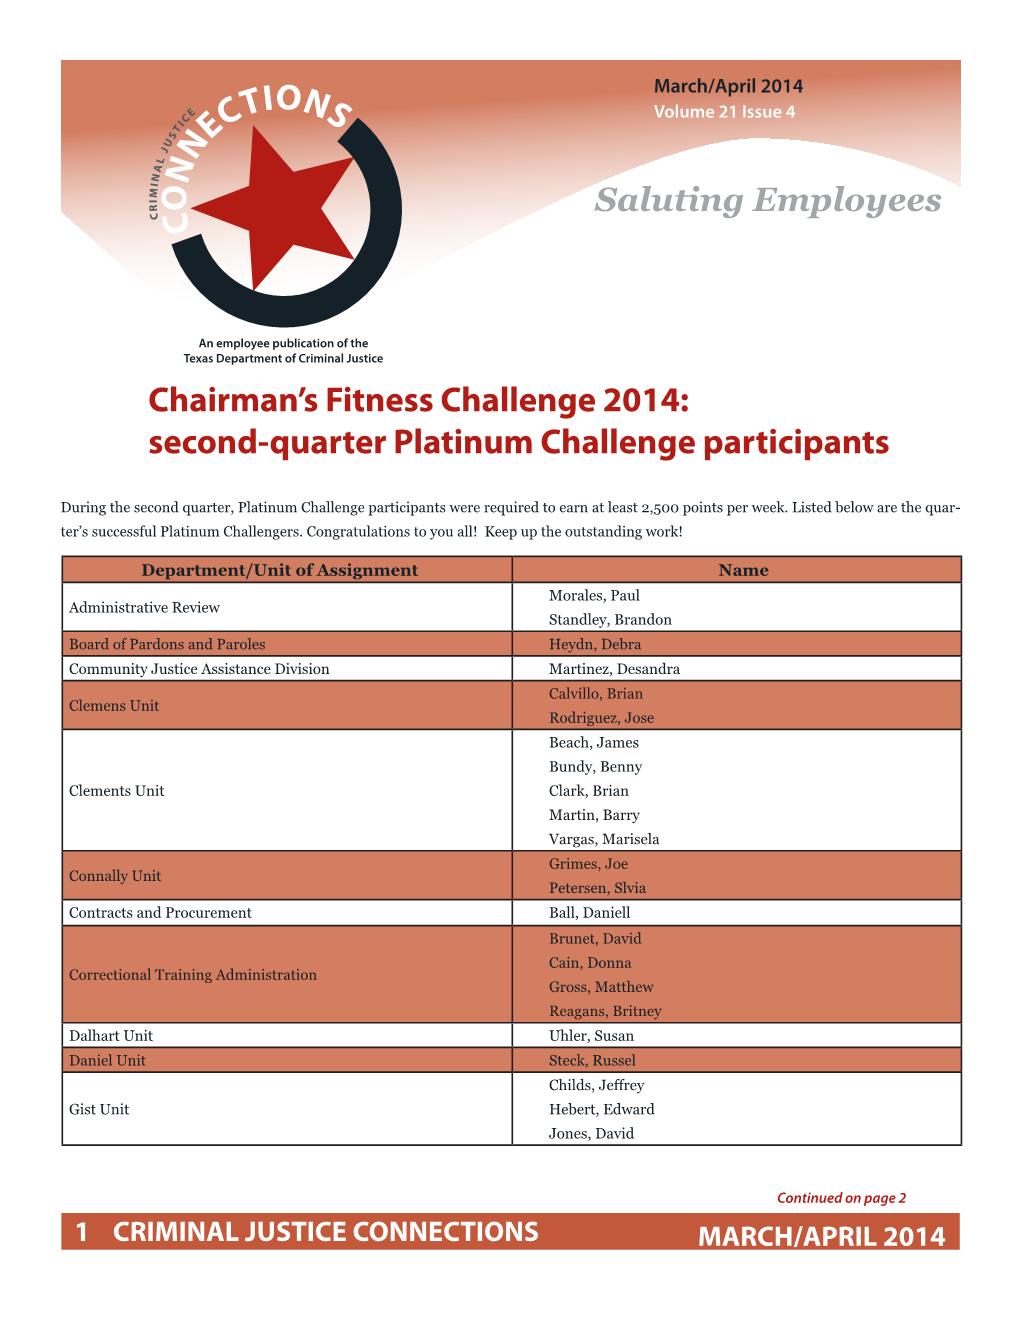 Platinum Challenge Participants